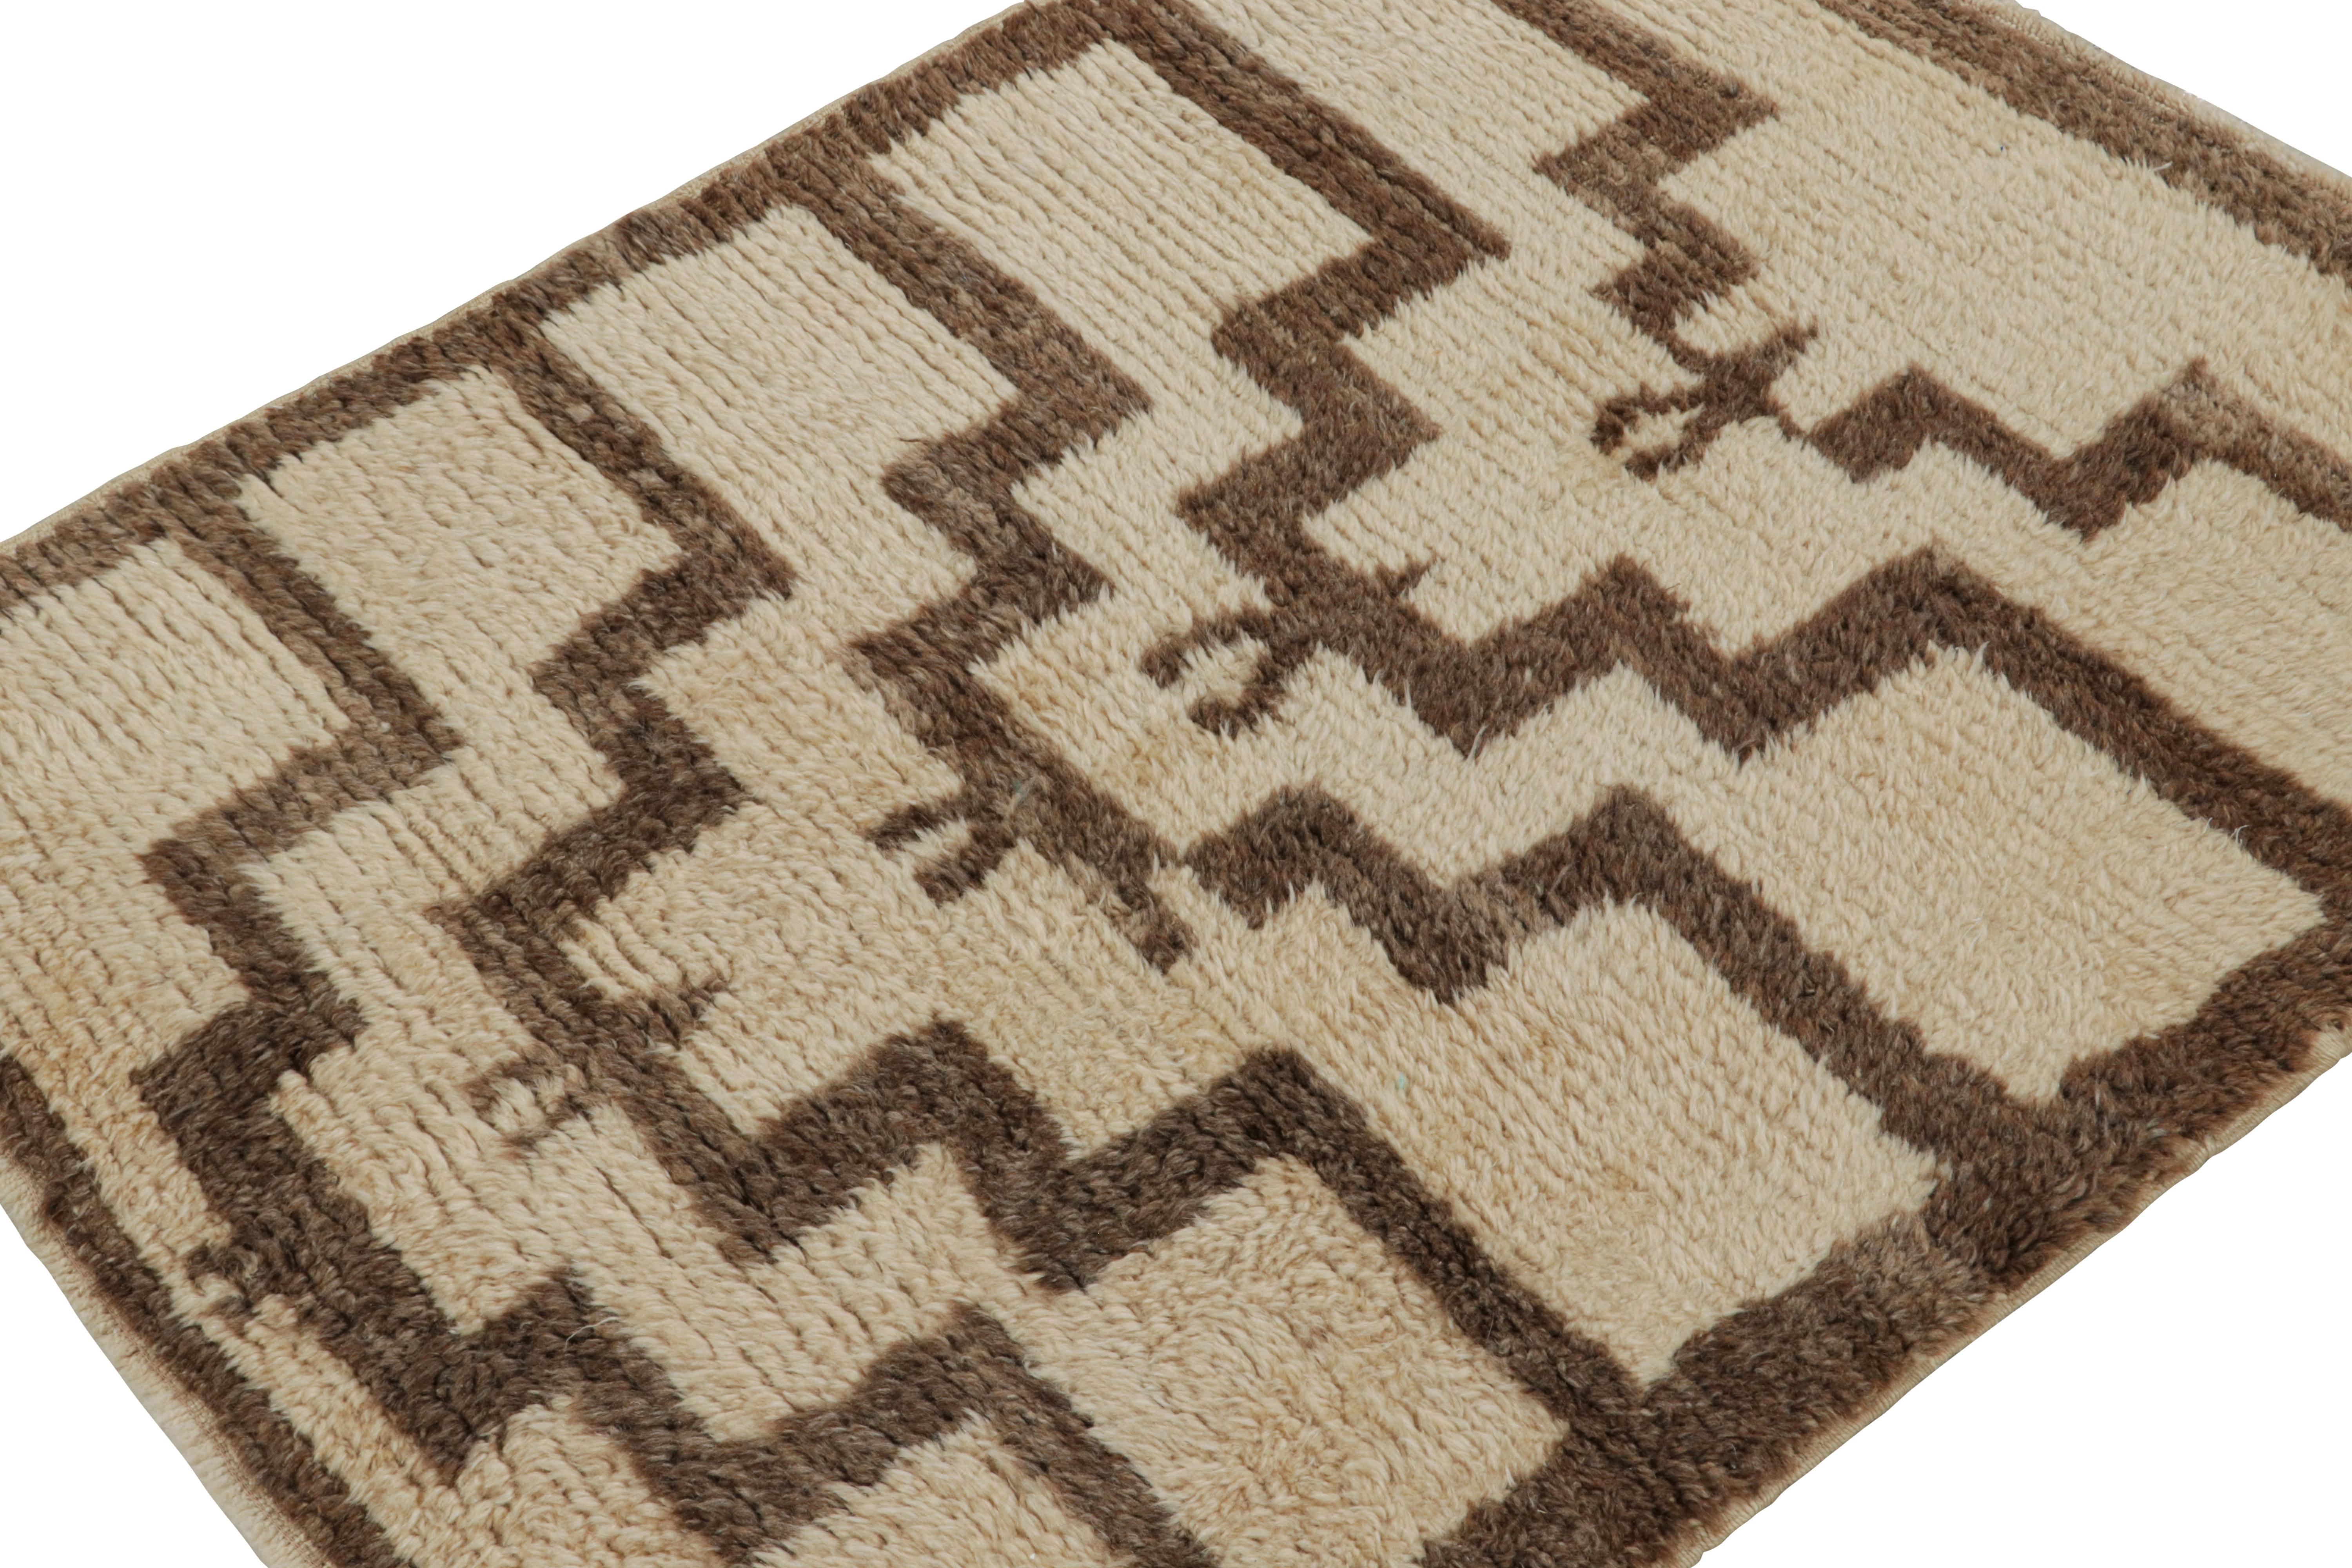 Dieser handgeknüpfte Wollteppich aus 4x4 Tulu, circa 1950-1960, gehört zur Familie der Tulus mit minimalistischen geometrischen Mustern, wie sie in dem satten Braun auf Beige zu sehen sind.  

Über das Design: 

Tulus gehören zu den begehrtesten